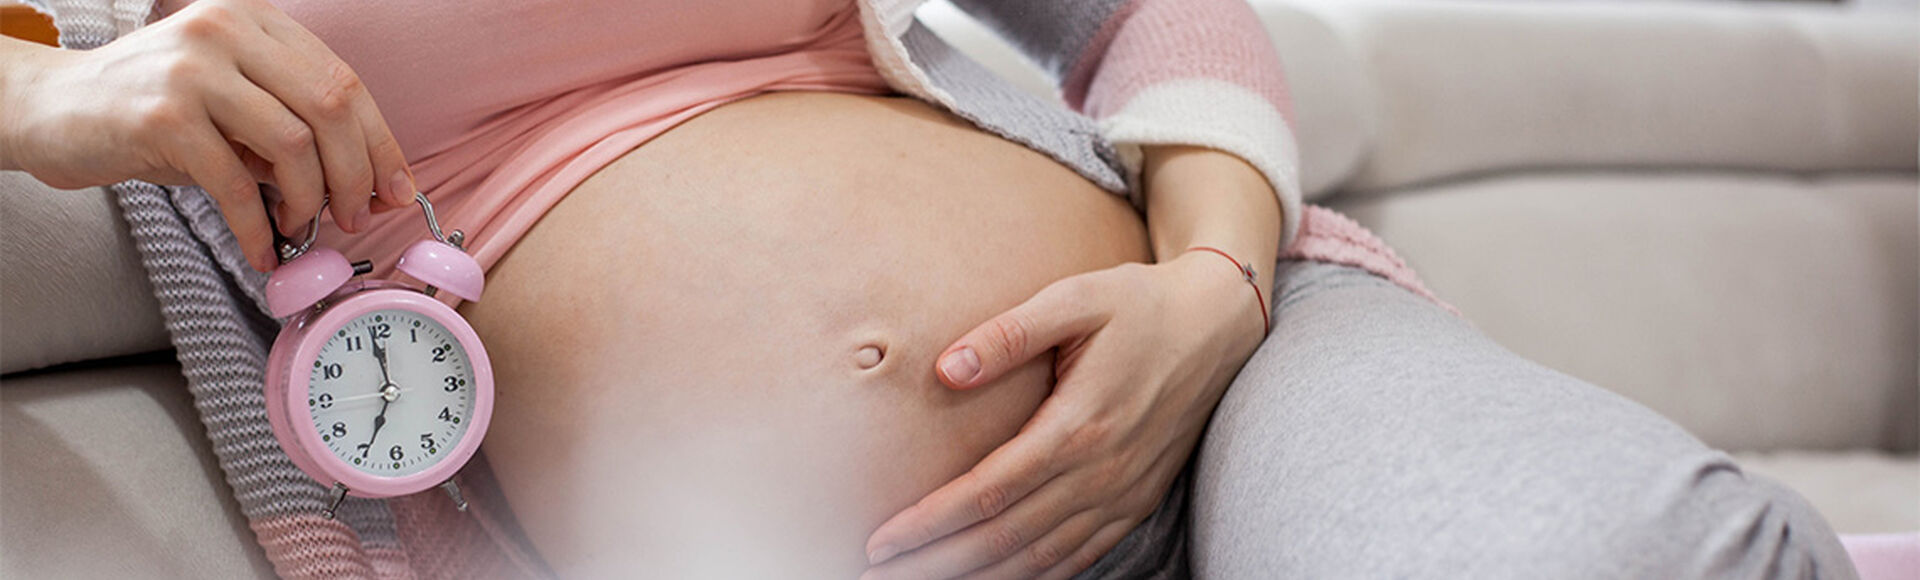 Parto restrasado en la semana 41 de embarazo | by Huggies Argentina